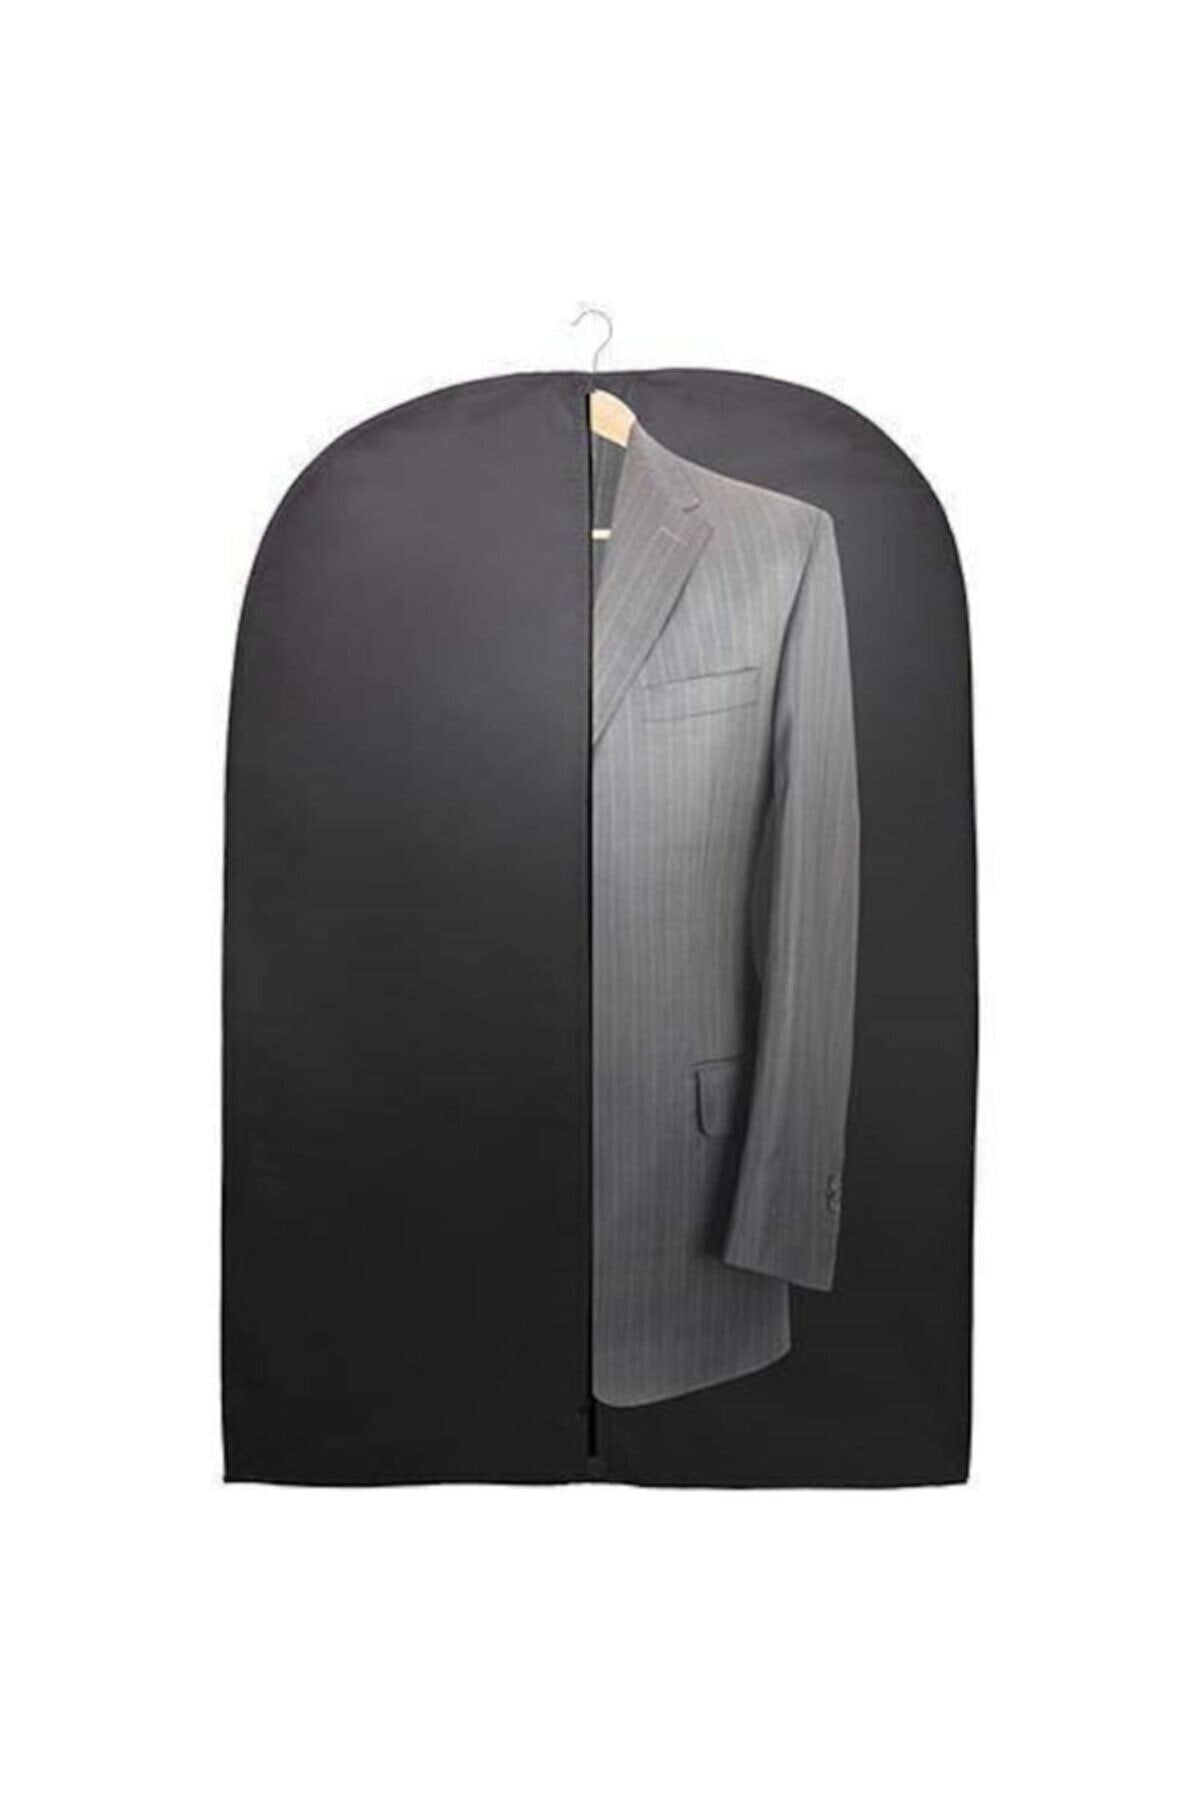 alorez 5 Adet Fermuarlı Ceket Elbise Takım Elbise Kılıfı Koruyucu Giysi Saklama Çantası